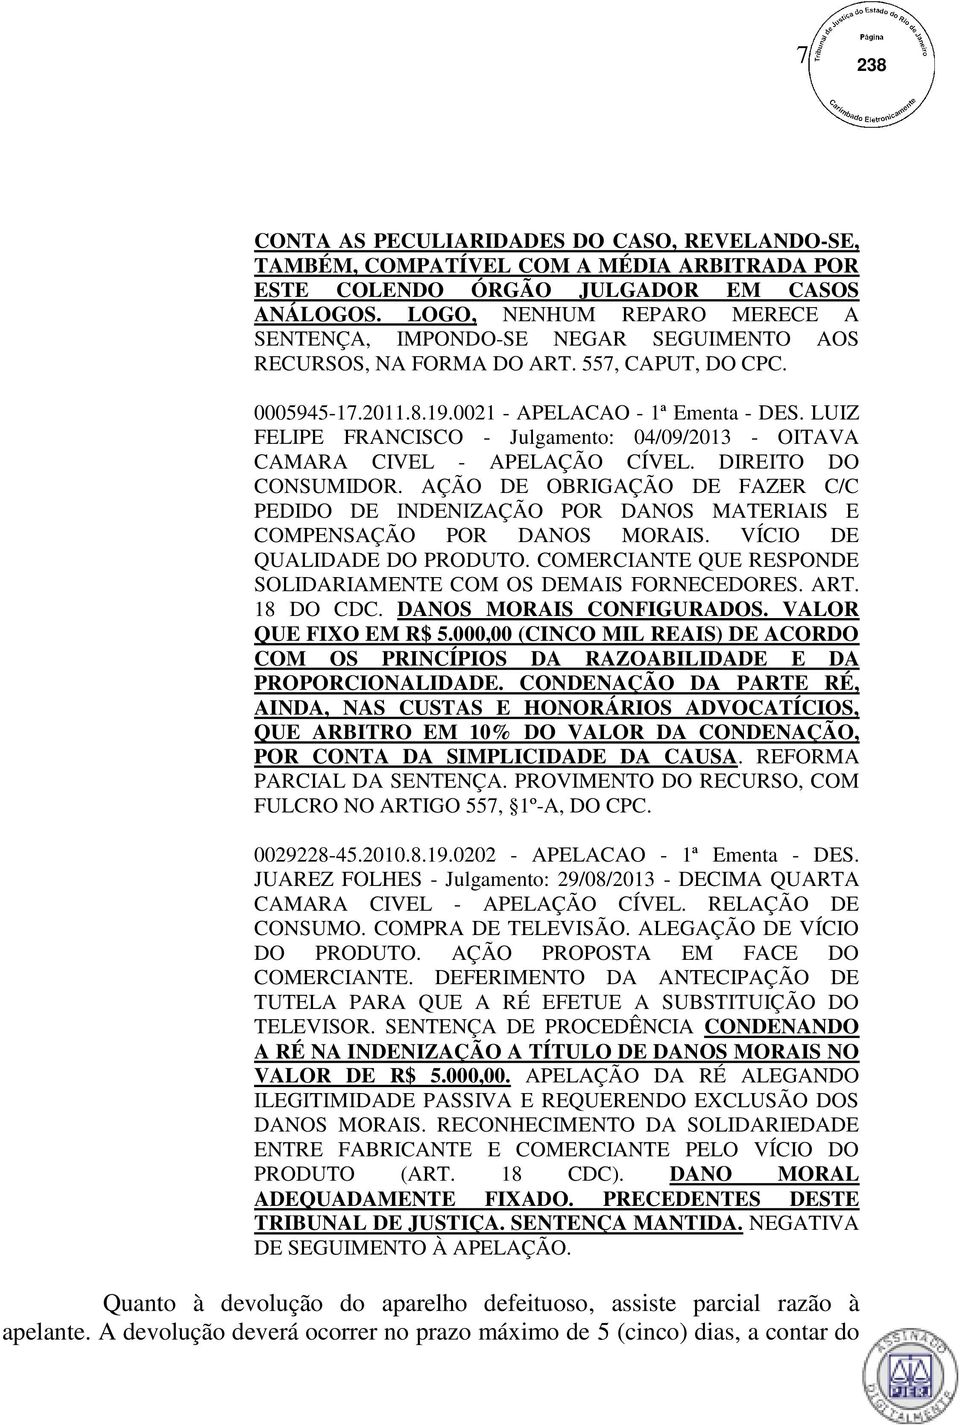 LUIZ FELIPE FRANCISCO - Julgamento: 04/09/2013 - OITAVA CAMARA CIVEL - APELAÇÃO CÍVEL. DIREITO DO CONSUMIDOR.